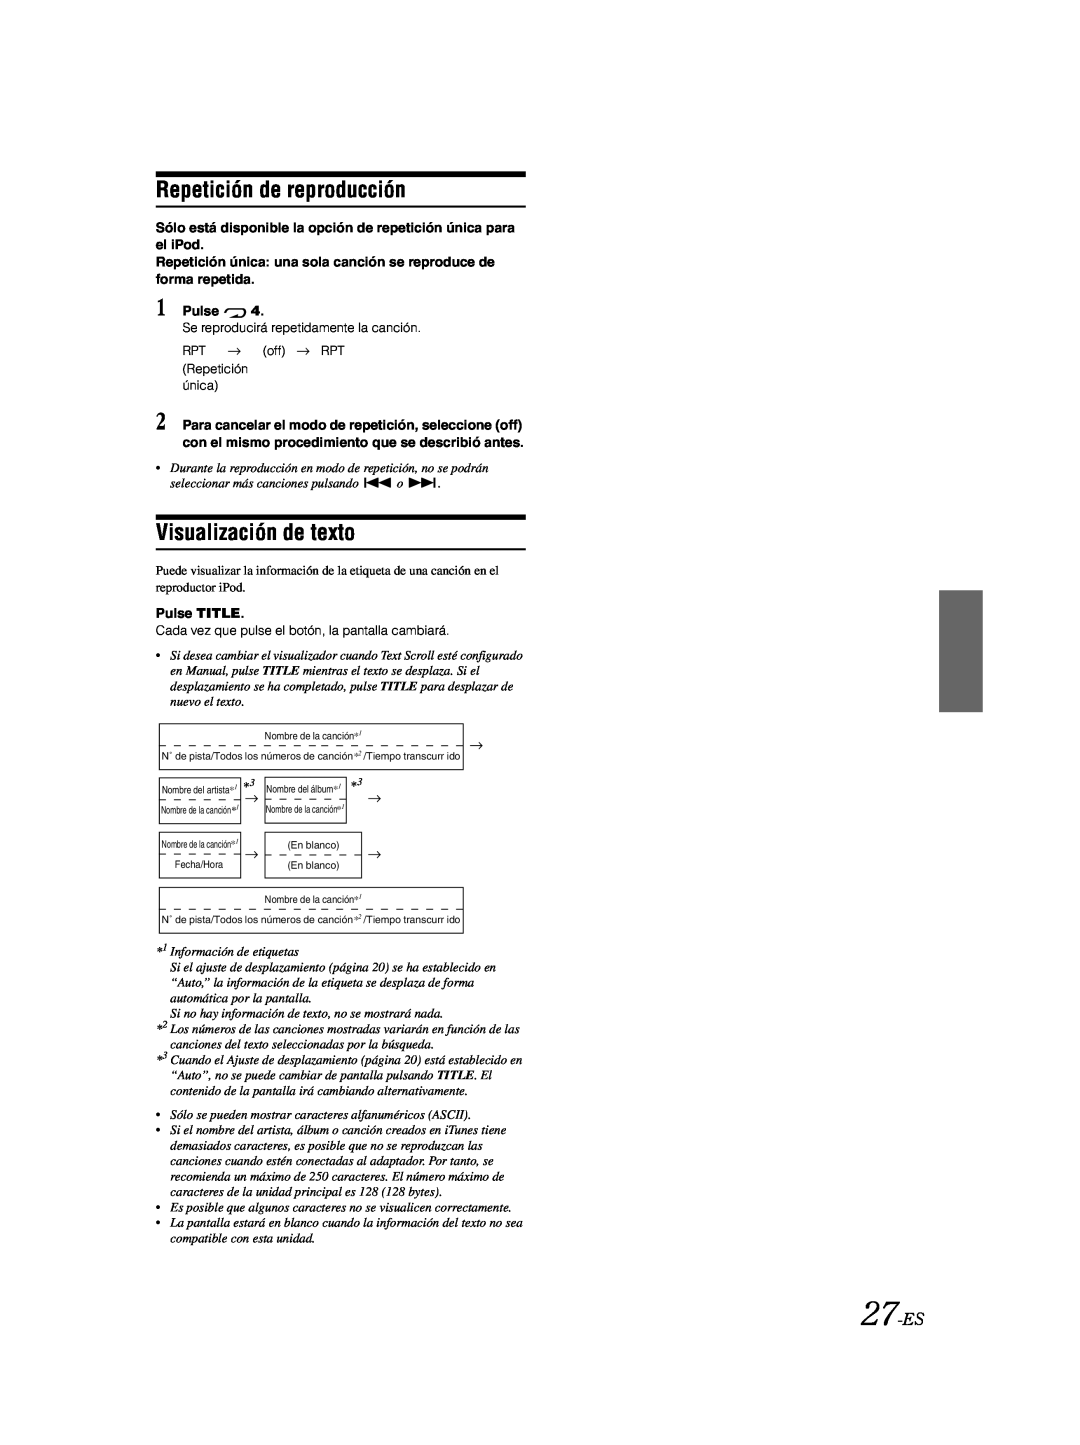 Alpine CDA-9885 owner manual Repetición de reproducción, Visualización de texto, 27-ES, Pulse TITLE 